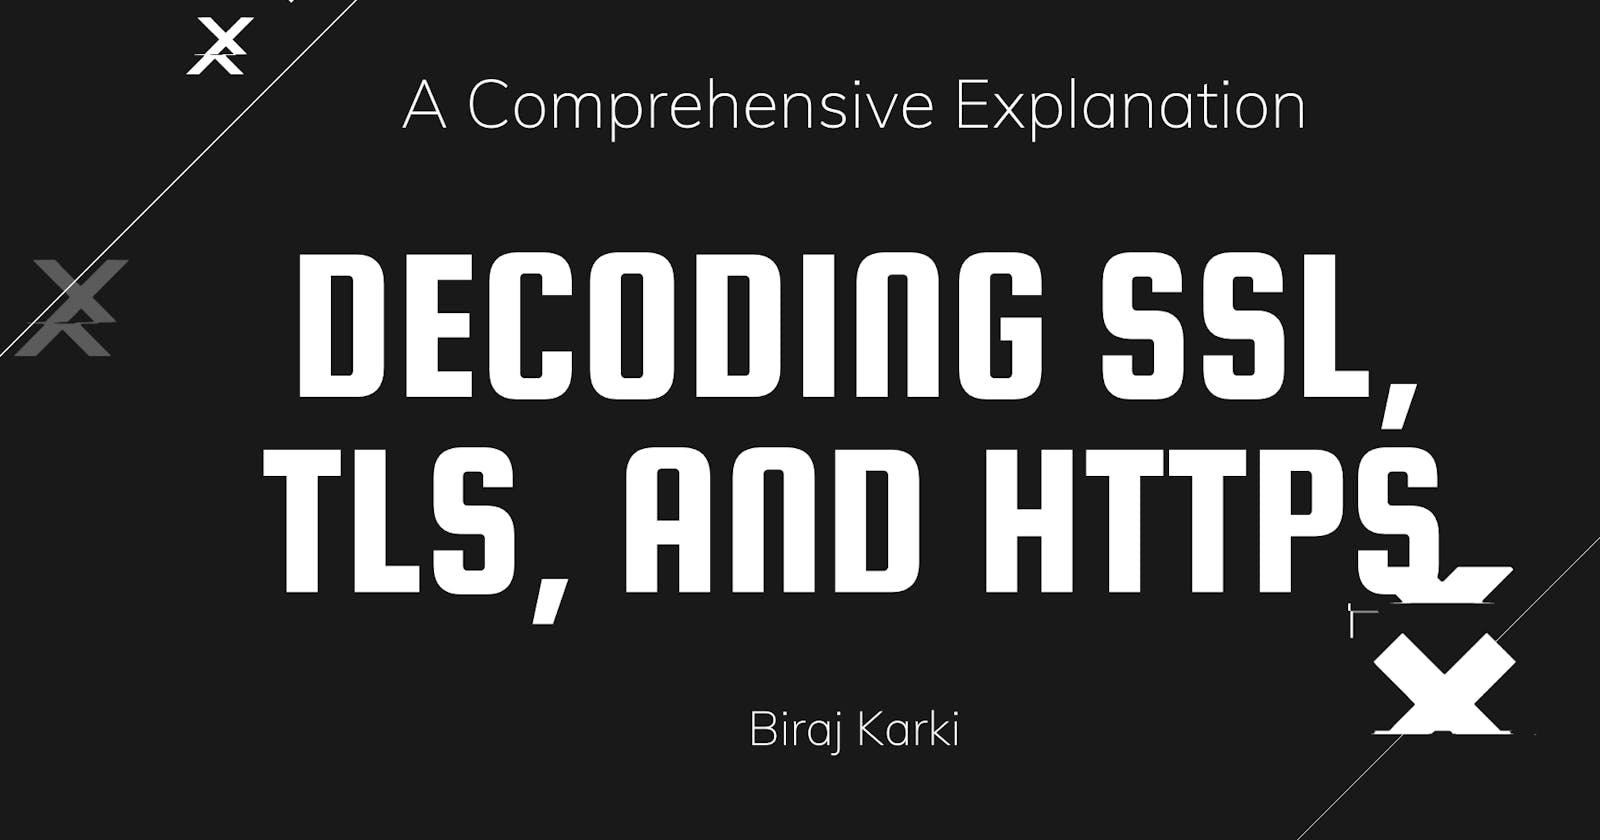 Decoding SSL, TLS, and HTTPS: A Comprehensive Explanation